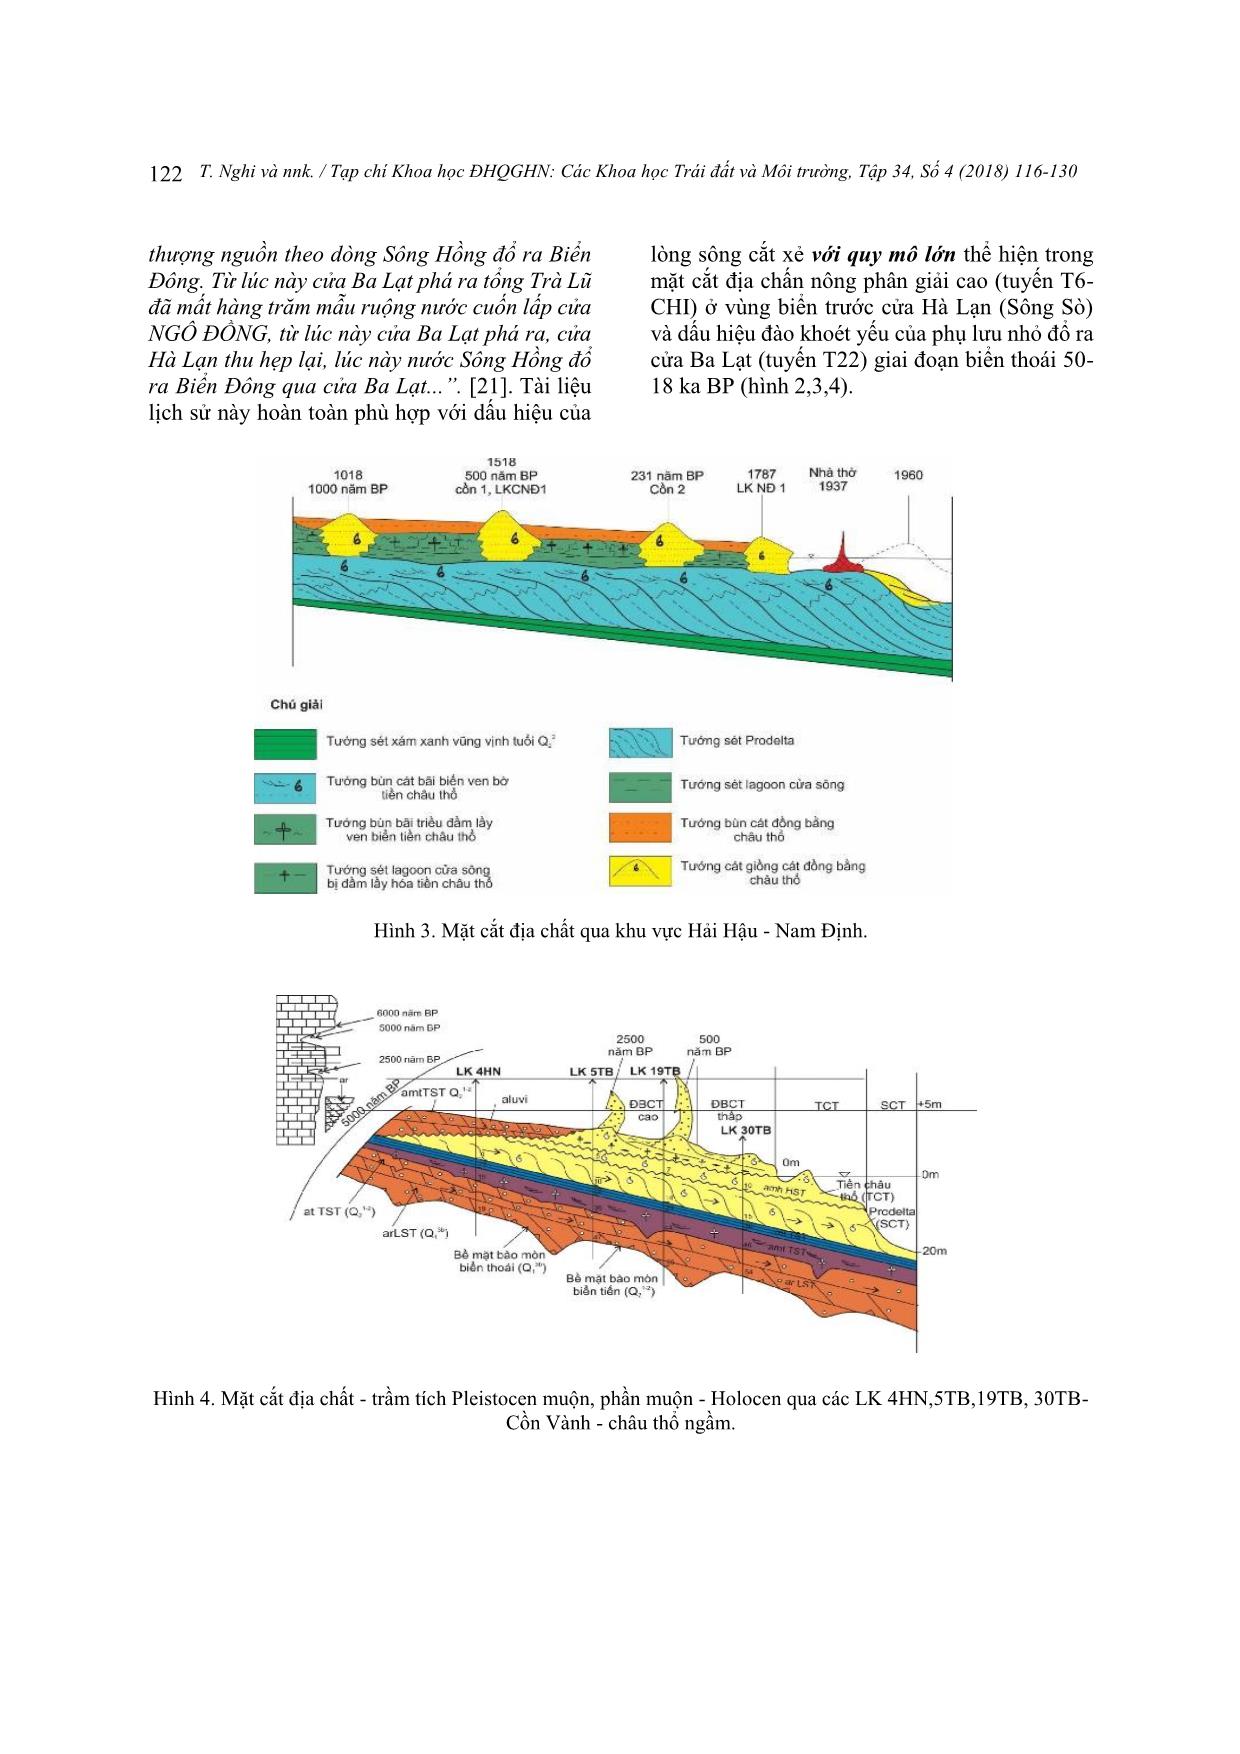 Diễn biến bồi tụ - Xói lở bờ biển Thái Bình - Nam Định từ Holocen muộn đến nay trong mối quan hệ với tiến hóa các thùy châu thổ và lịch sử sông Sò trang 7